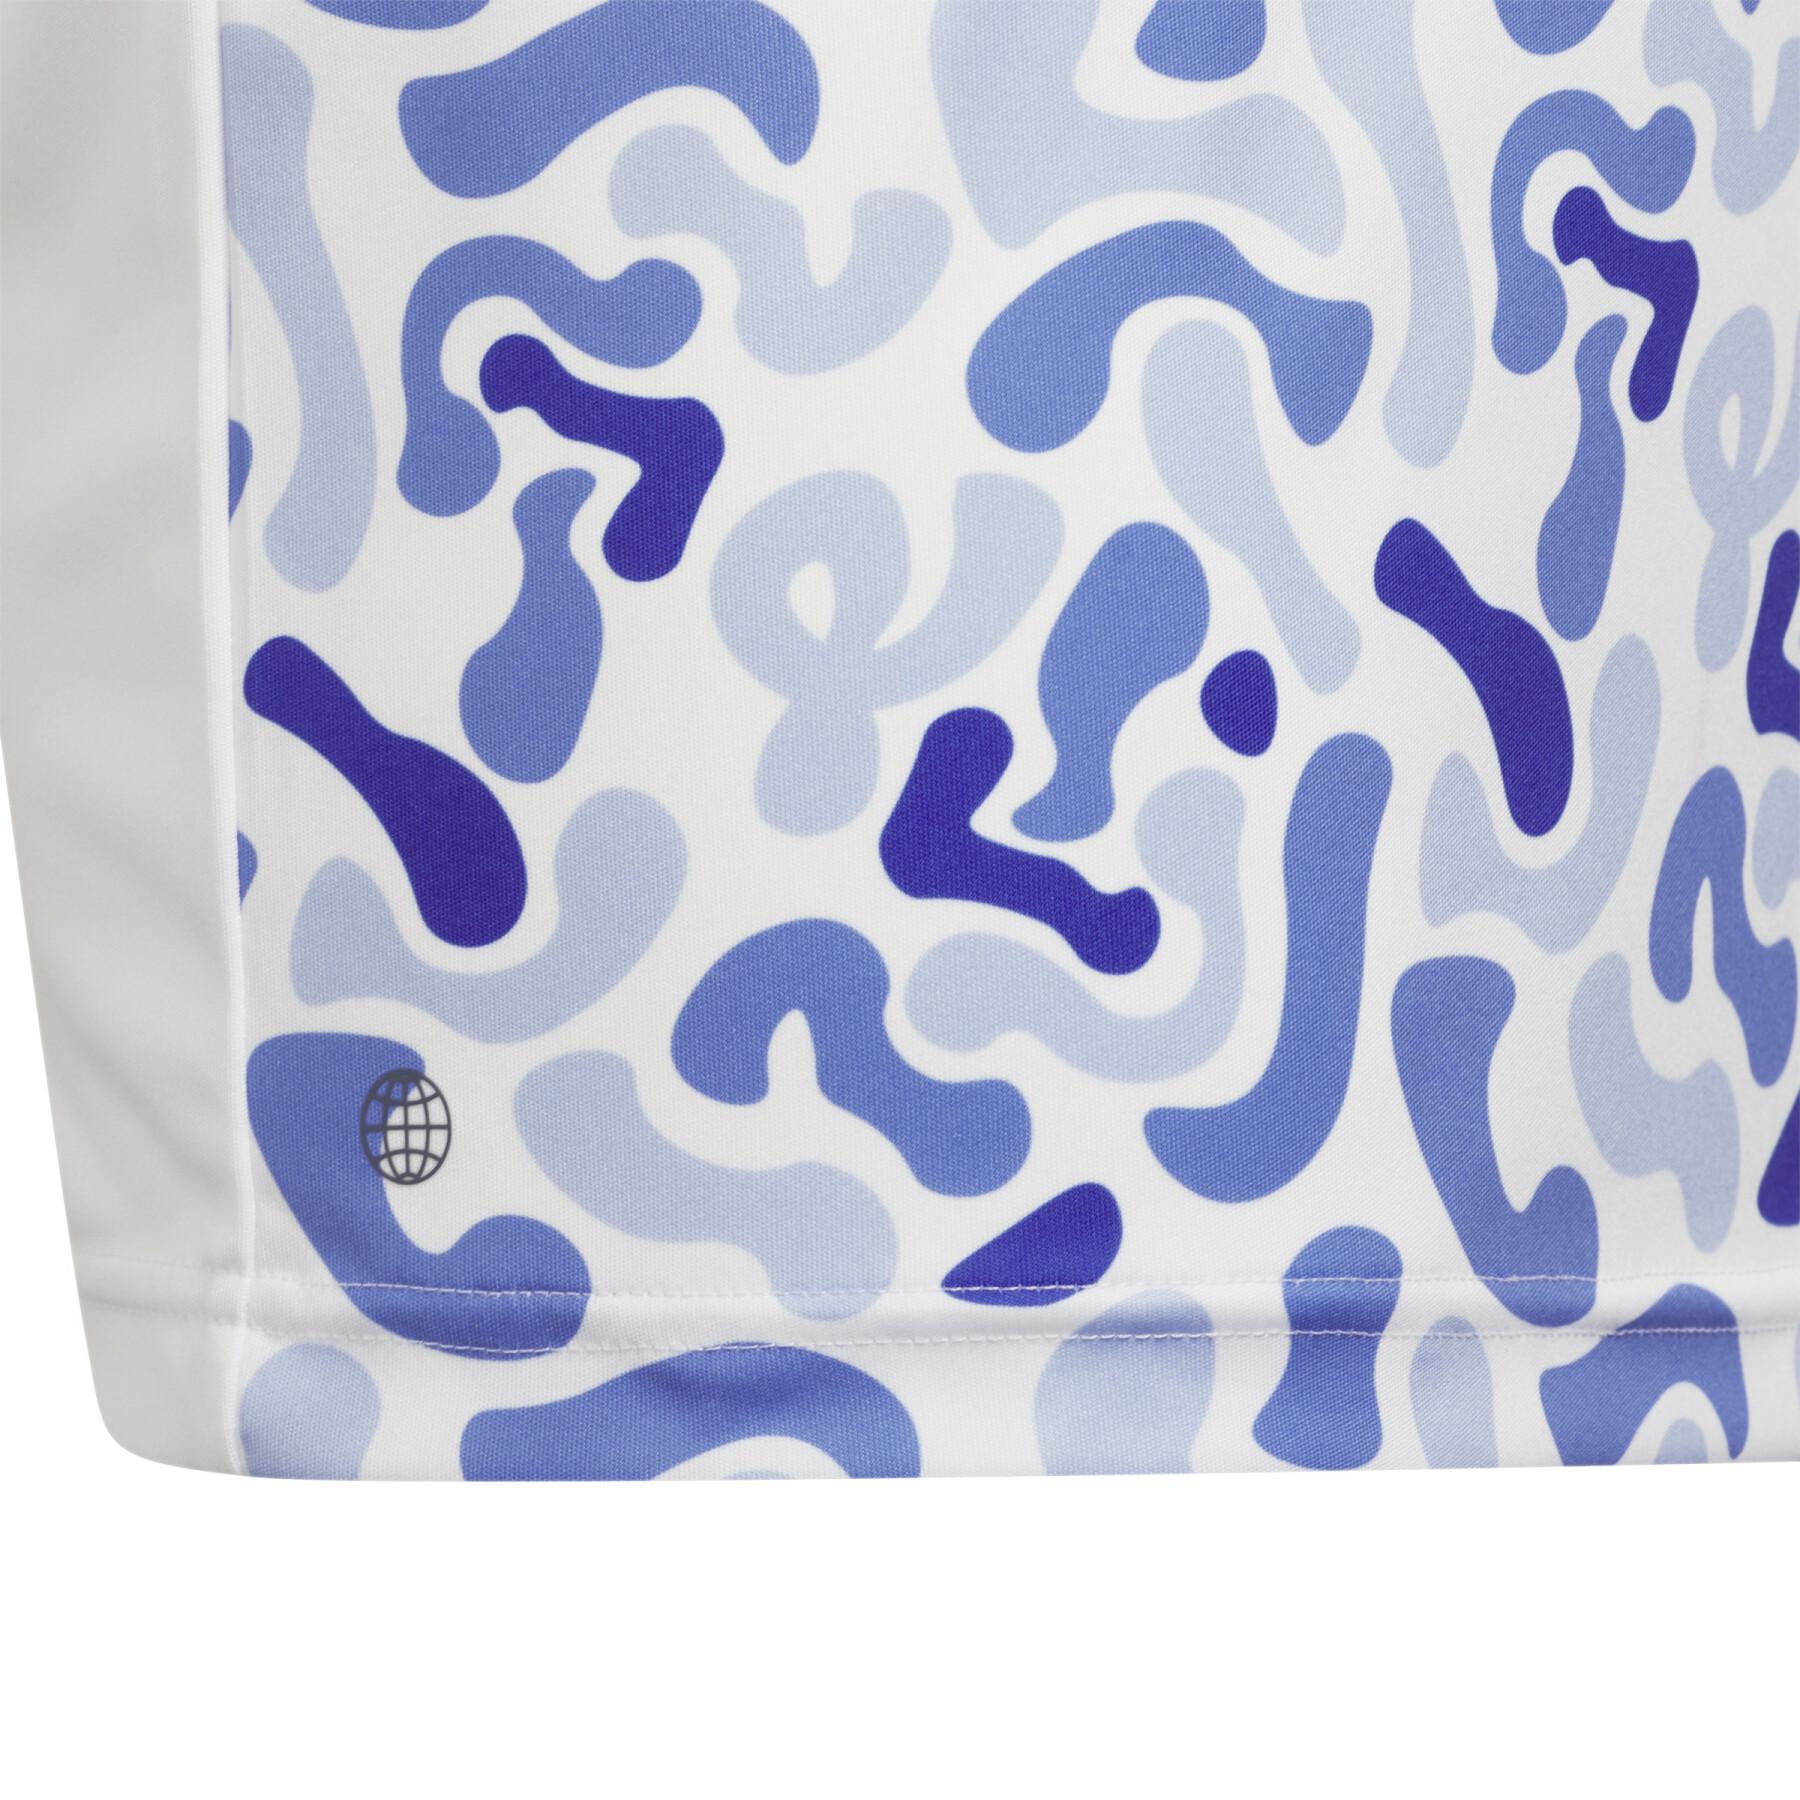 Polo-Shirt mit Camouflage-Druck für Kinder adidas